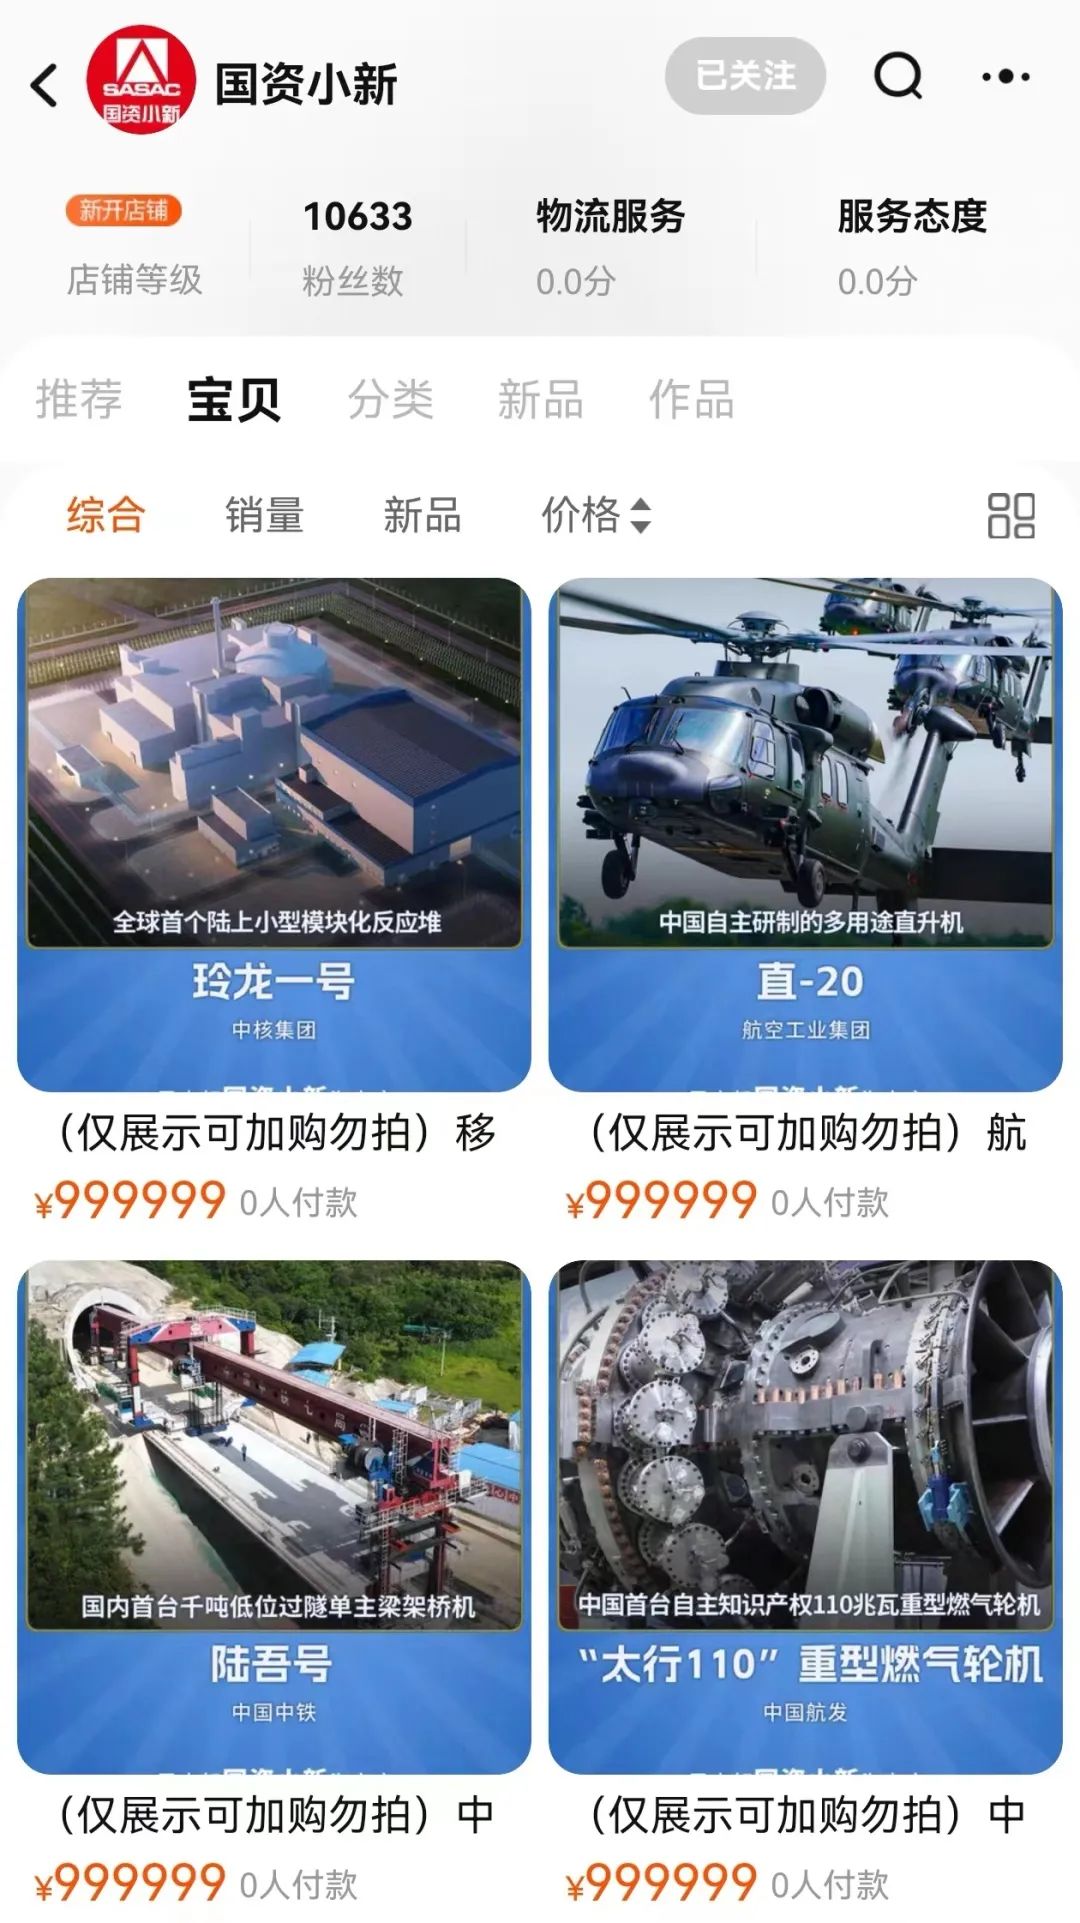 A screenshot of SASAC's Taobao shop